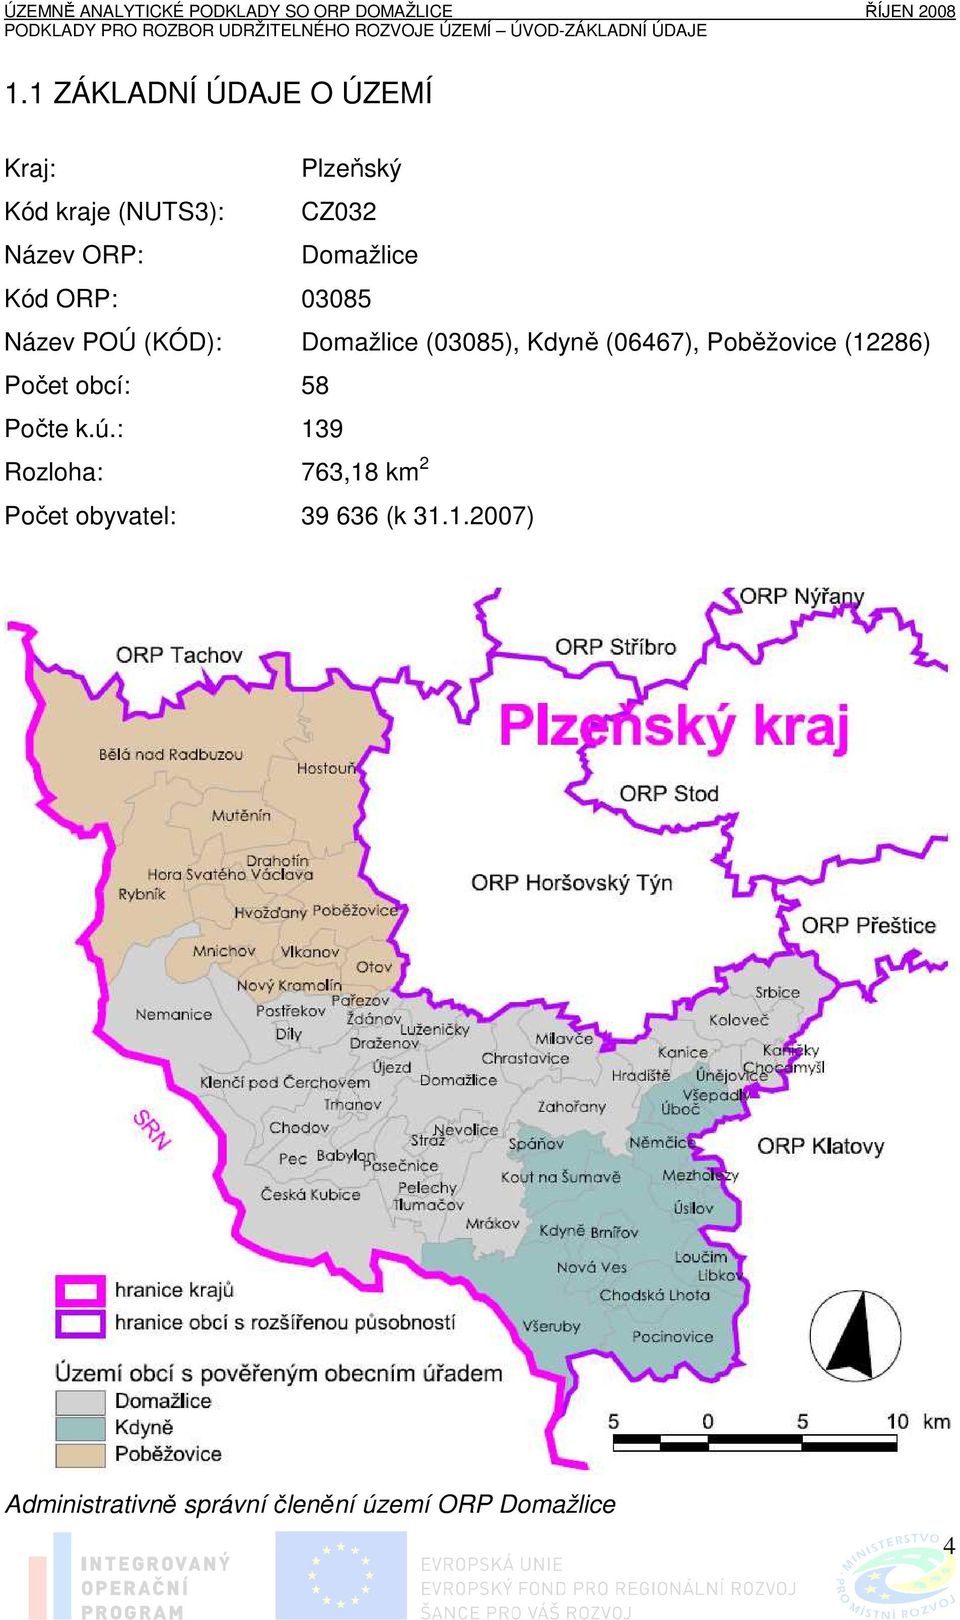 Poběžovice (12286) Počet obcí: 58 Počte k.ú.